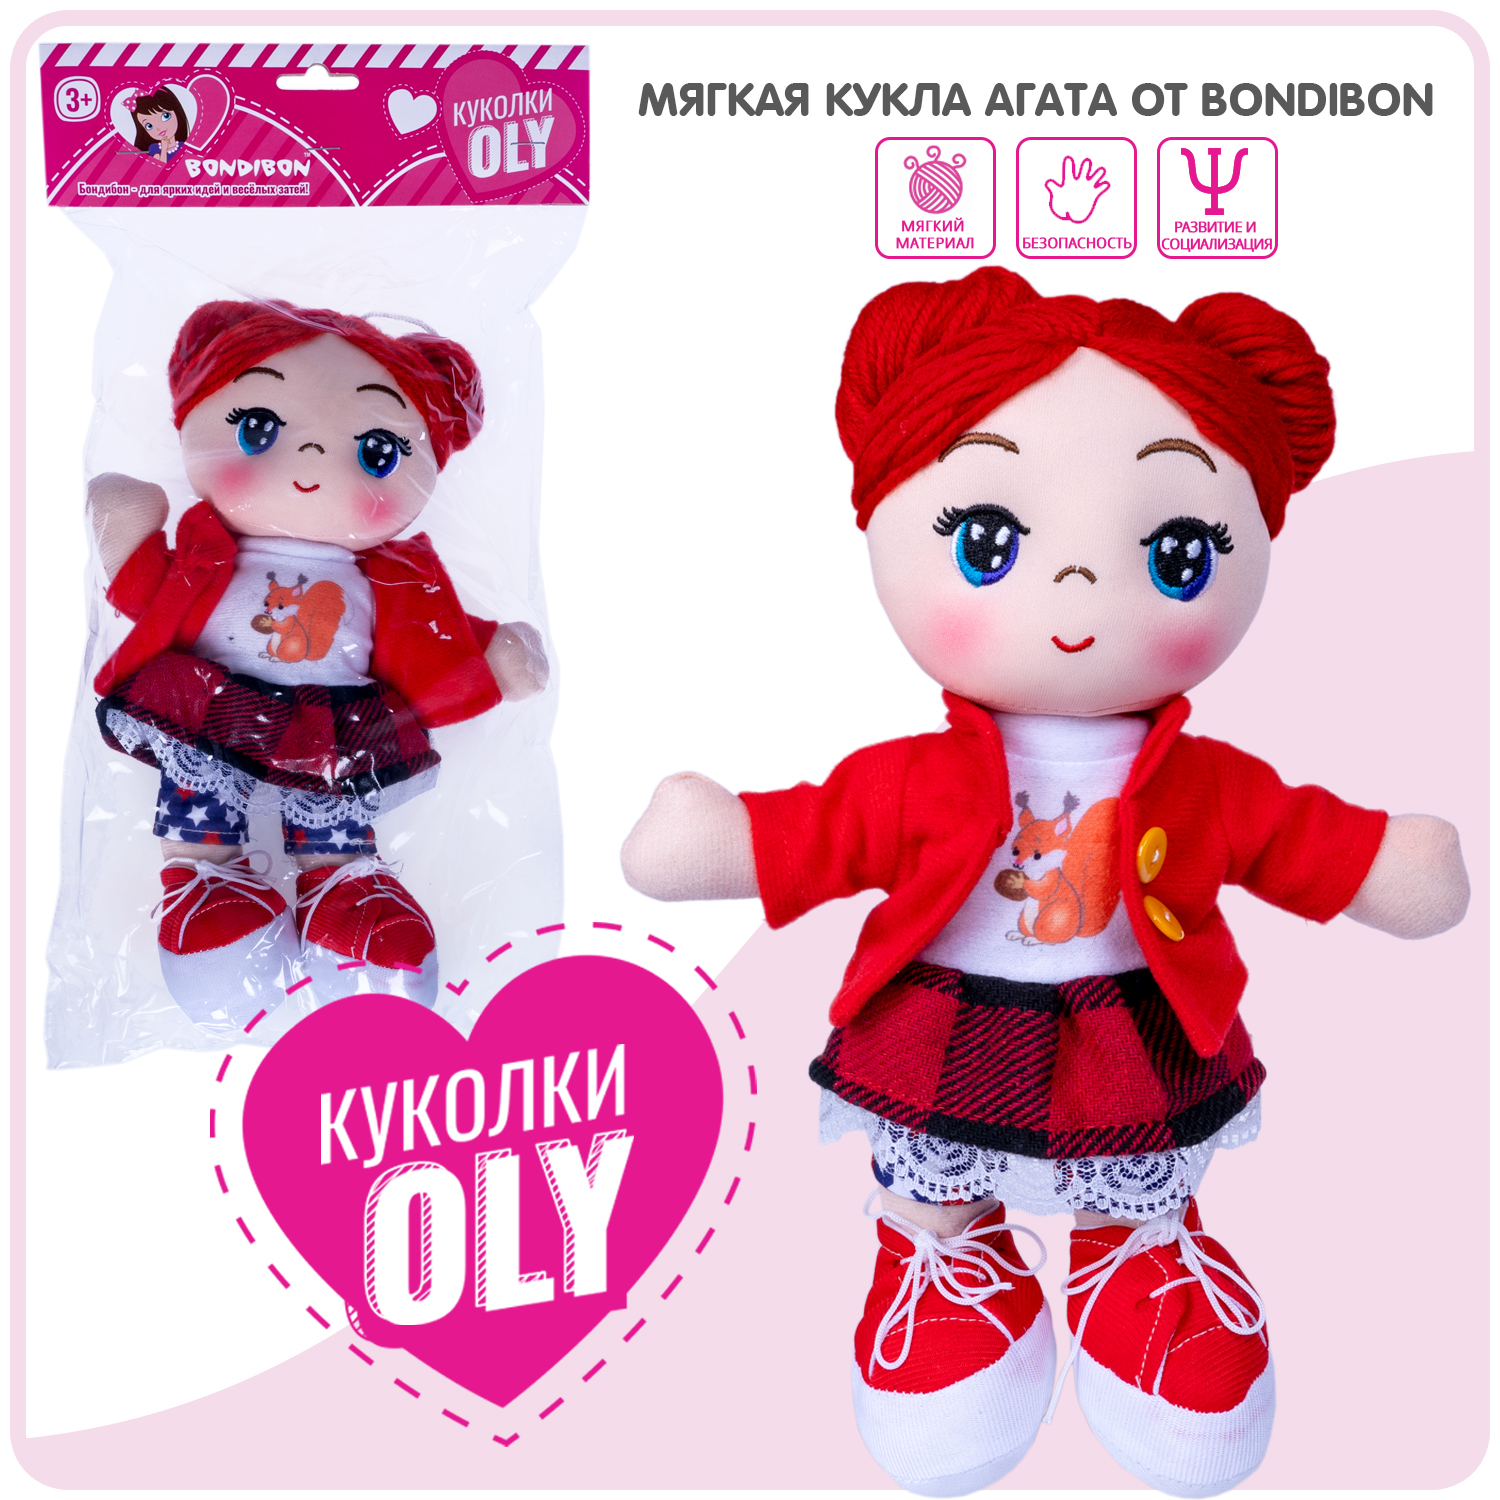 Мягкая кукла Oly, размер 26 см, РАС, Агата- красные волосы